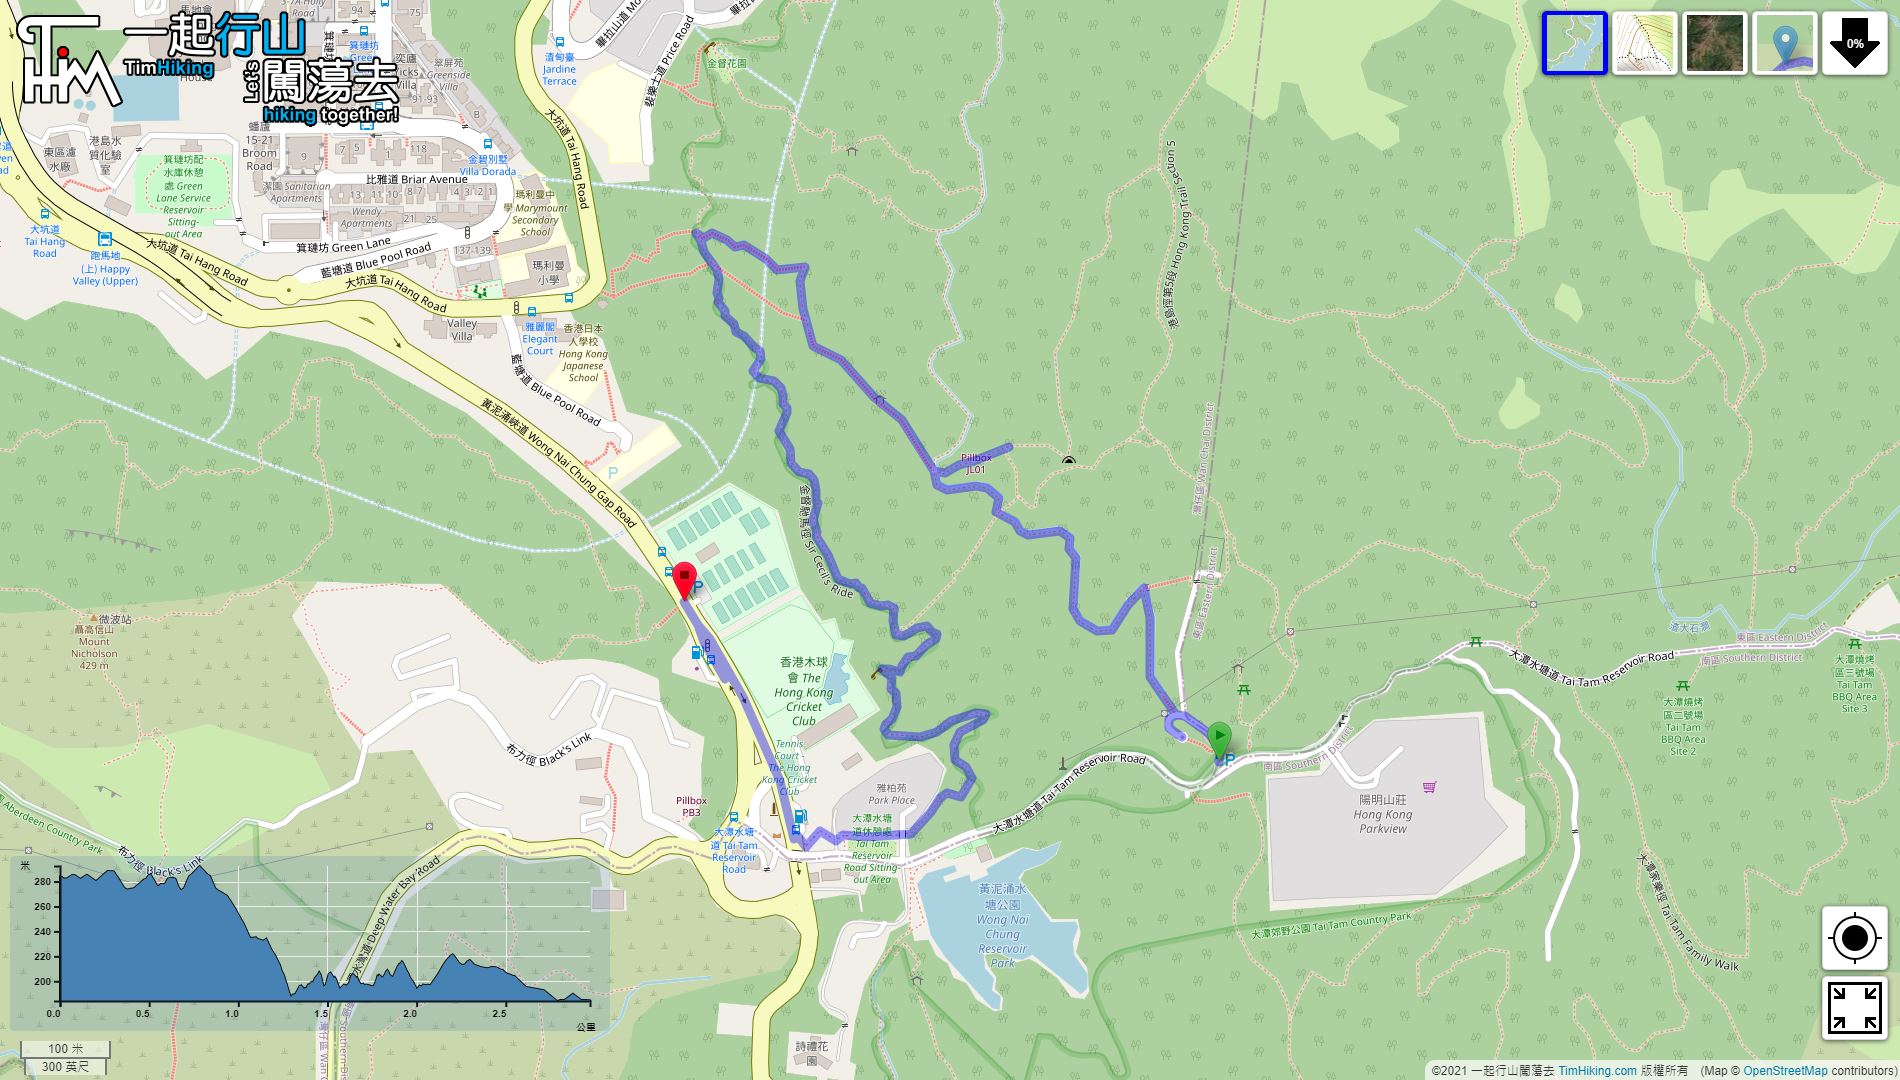 「Wong Nai Chung Gap Trail」路線Map